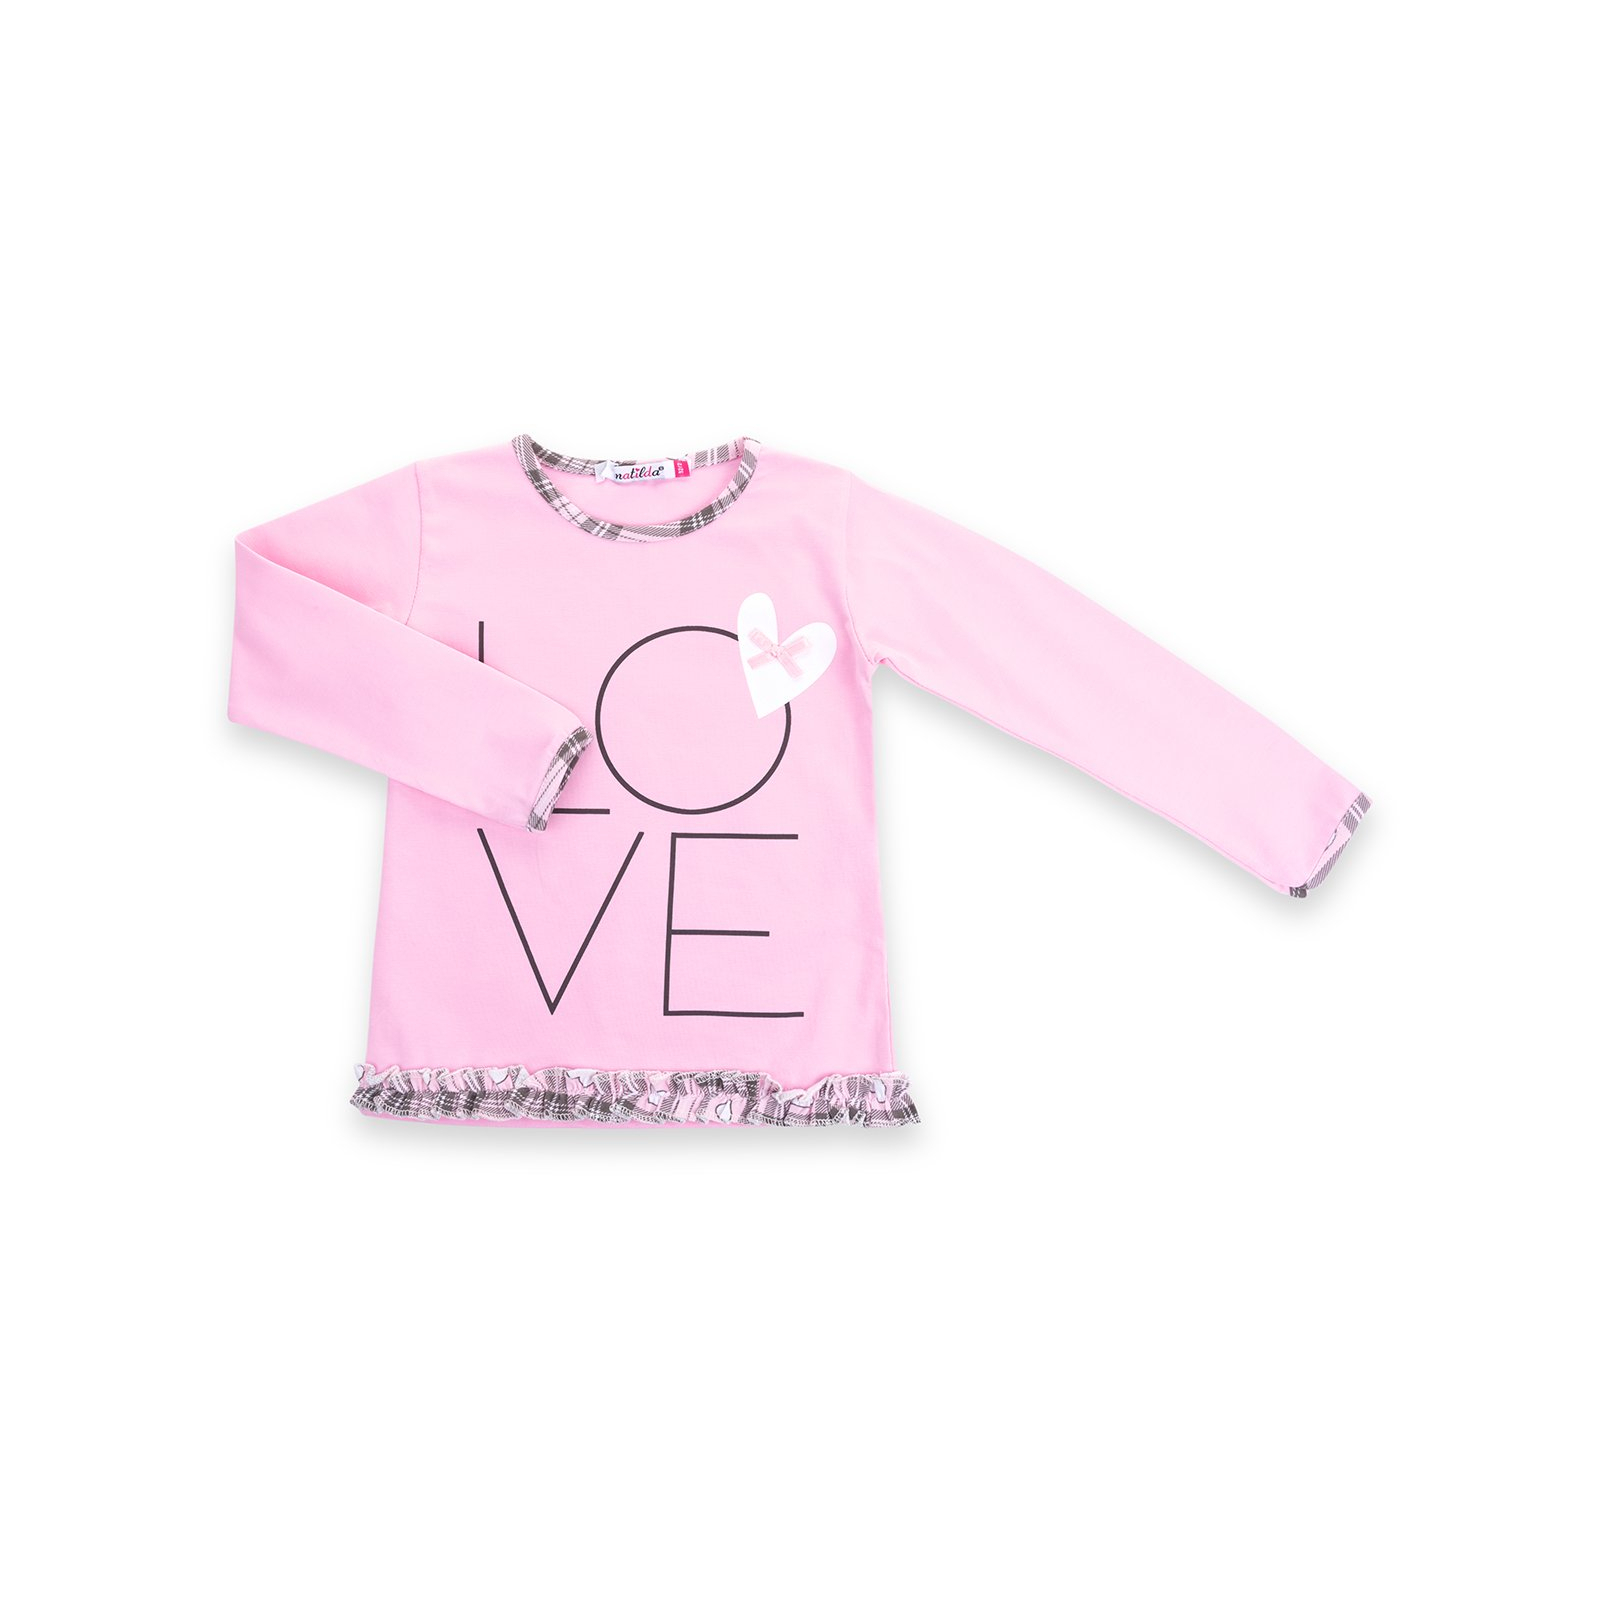 Піжама Matilda з сердечками "Love" (7585-110G-pink) зображення 2